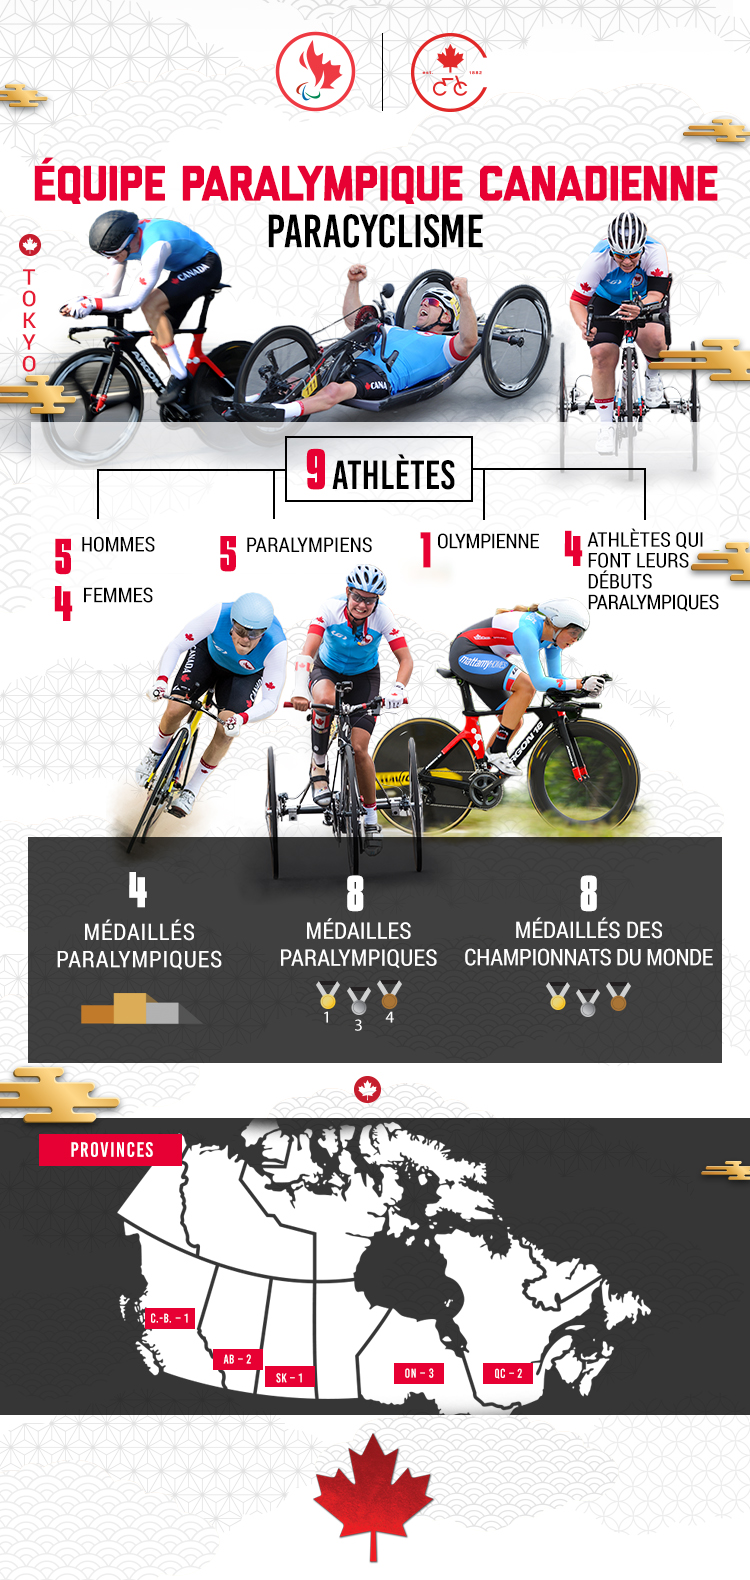 Une infographie avec des statistiques sur l'équipe paralympique canadienne de cyclisme pour Tokyo 2020